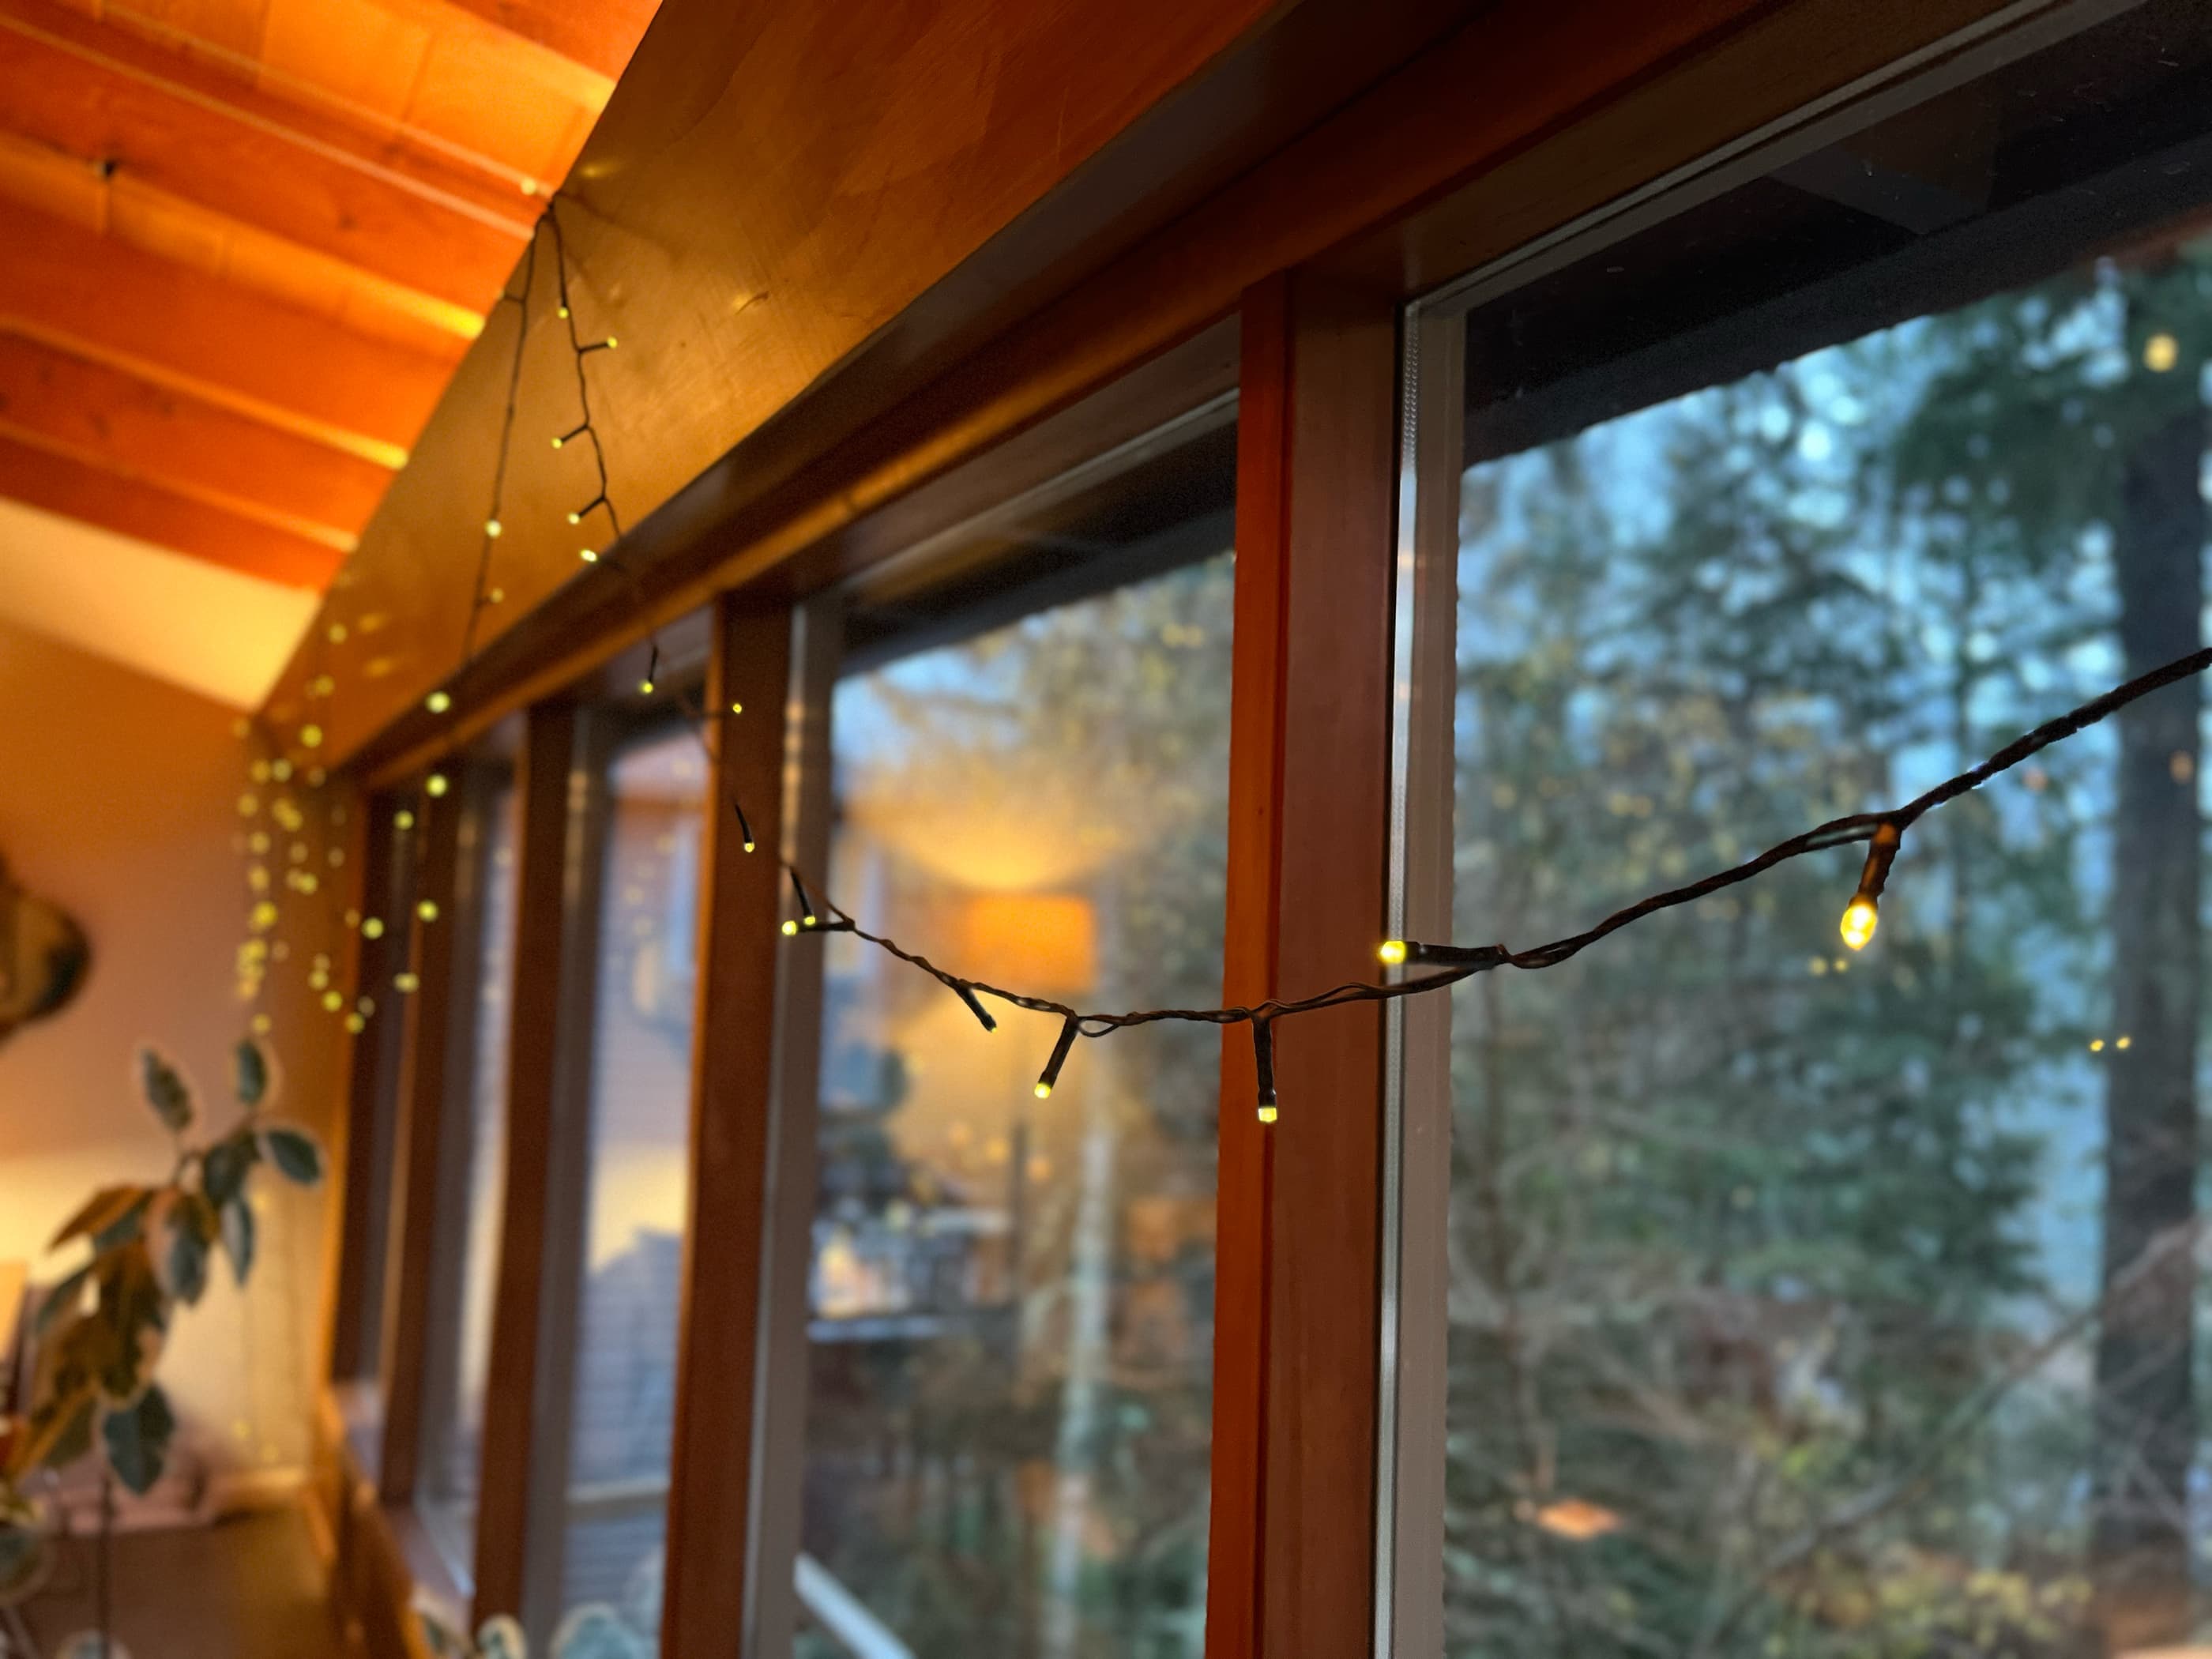 Command Indoor/Outdoor Light Clips